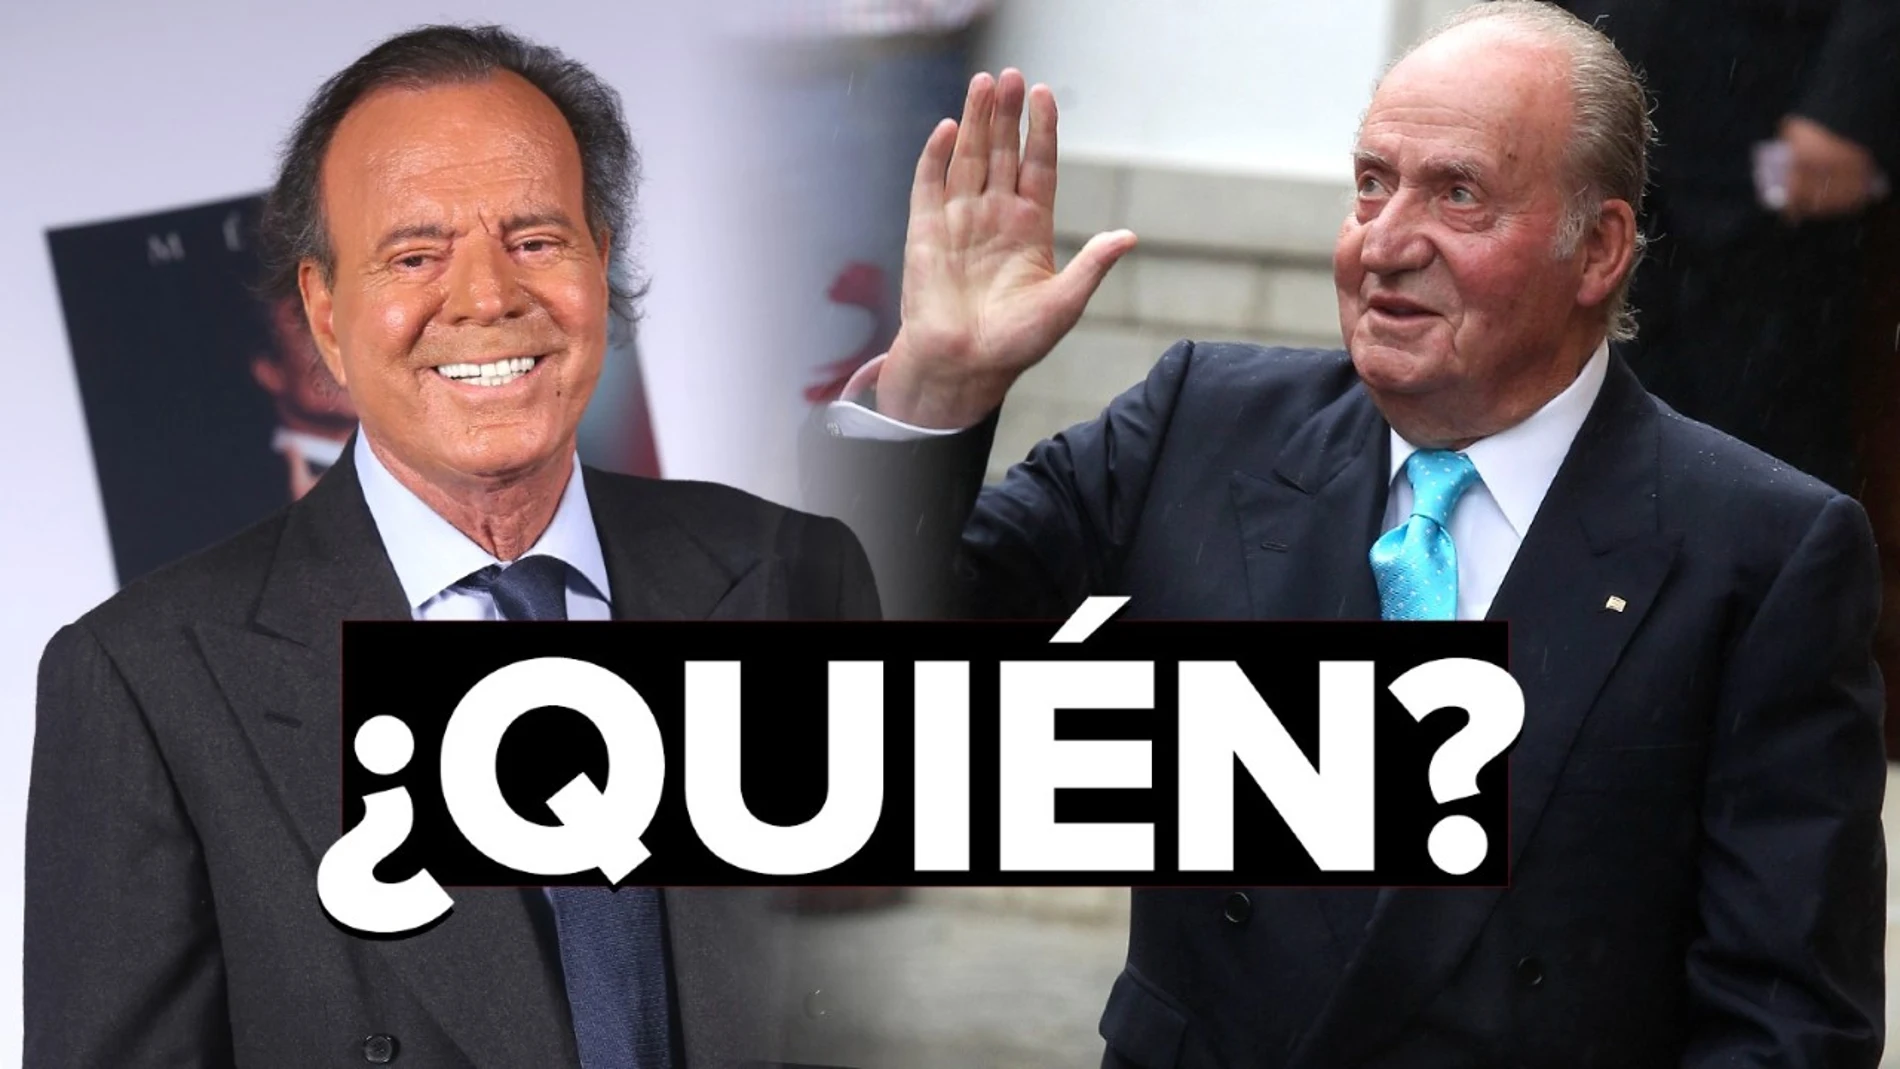 Vota en el Sextómetro de Aruser@s: ¿Quién te interesa más, Julio Iglesias o el rey Juan Carlos?